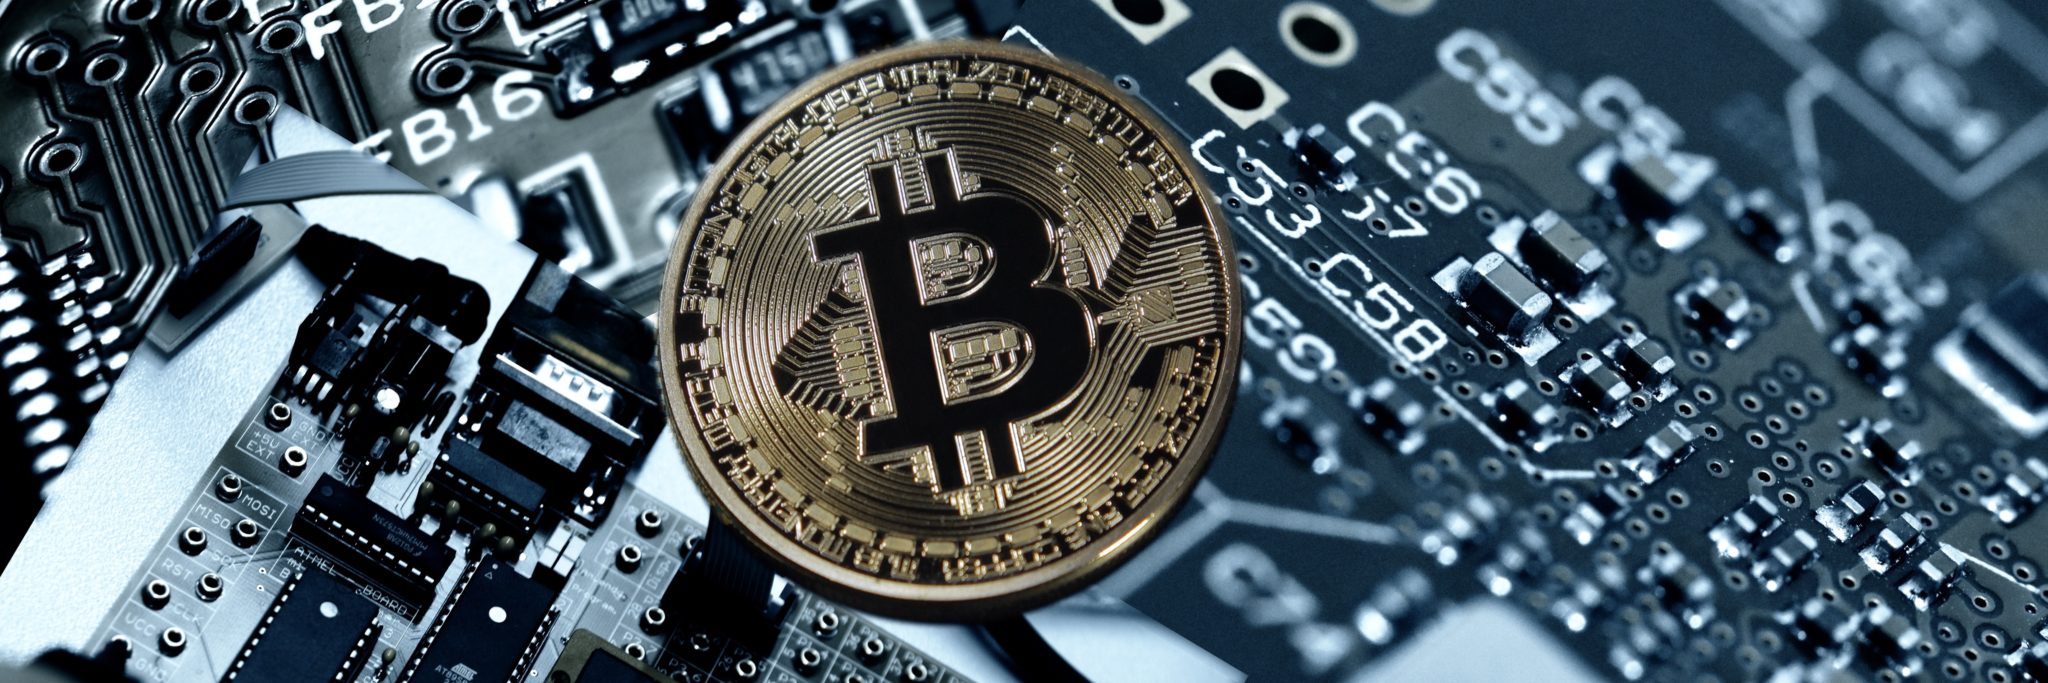 Der Bitcoin liegt auf einer Platine. Kryptowährungen existieren nur virtuell.